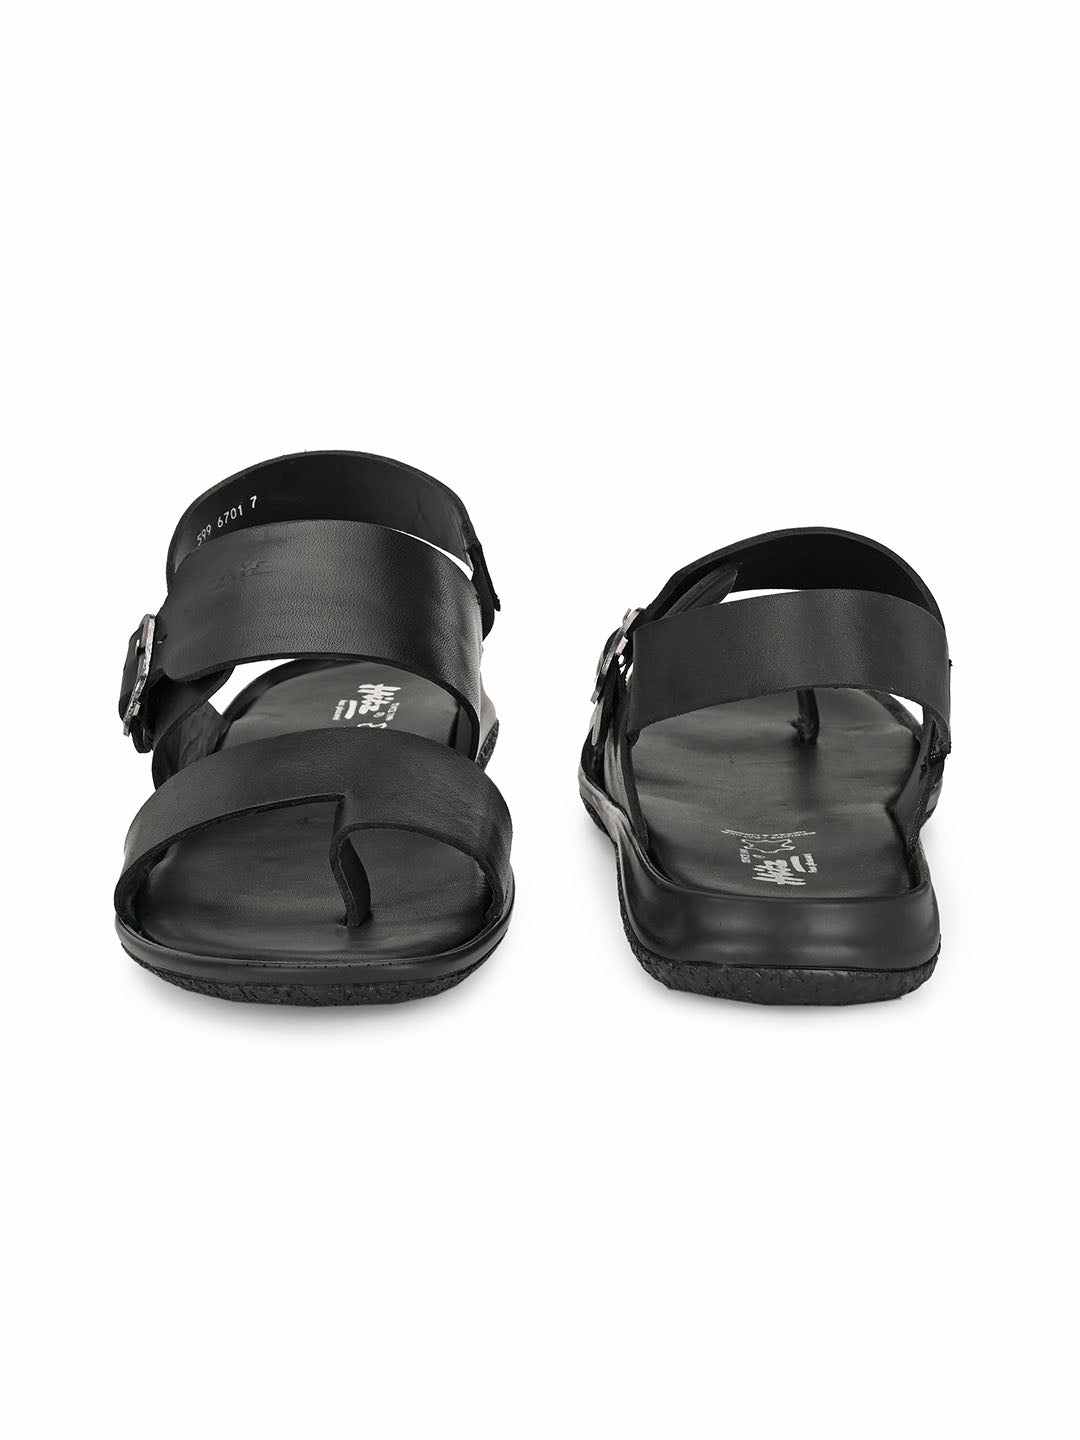 Sandals - Buy Sandals Online for Men, Women & Kids | Myntra